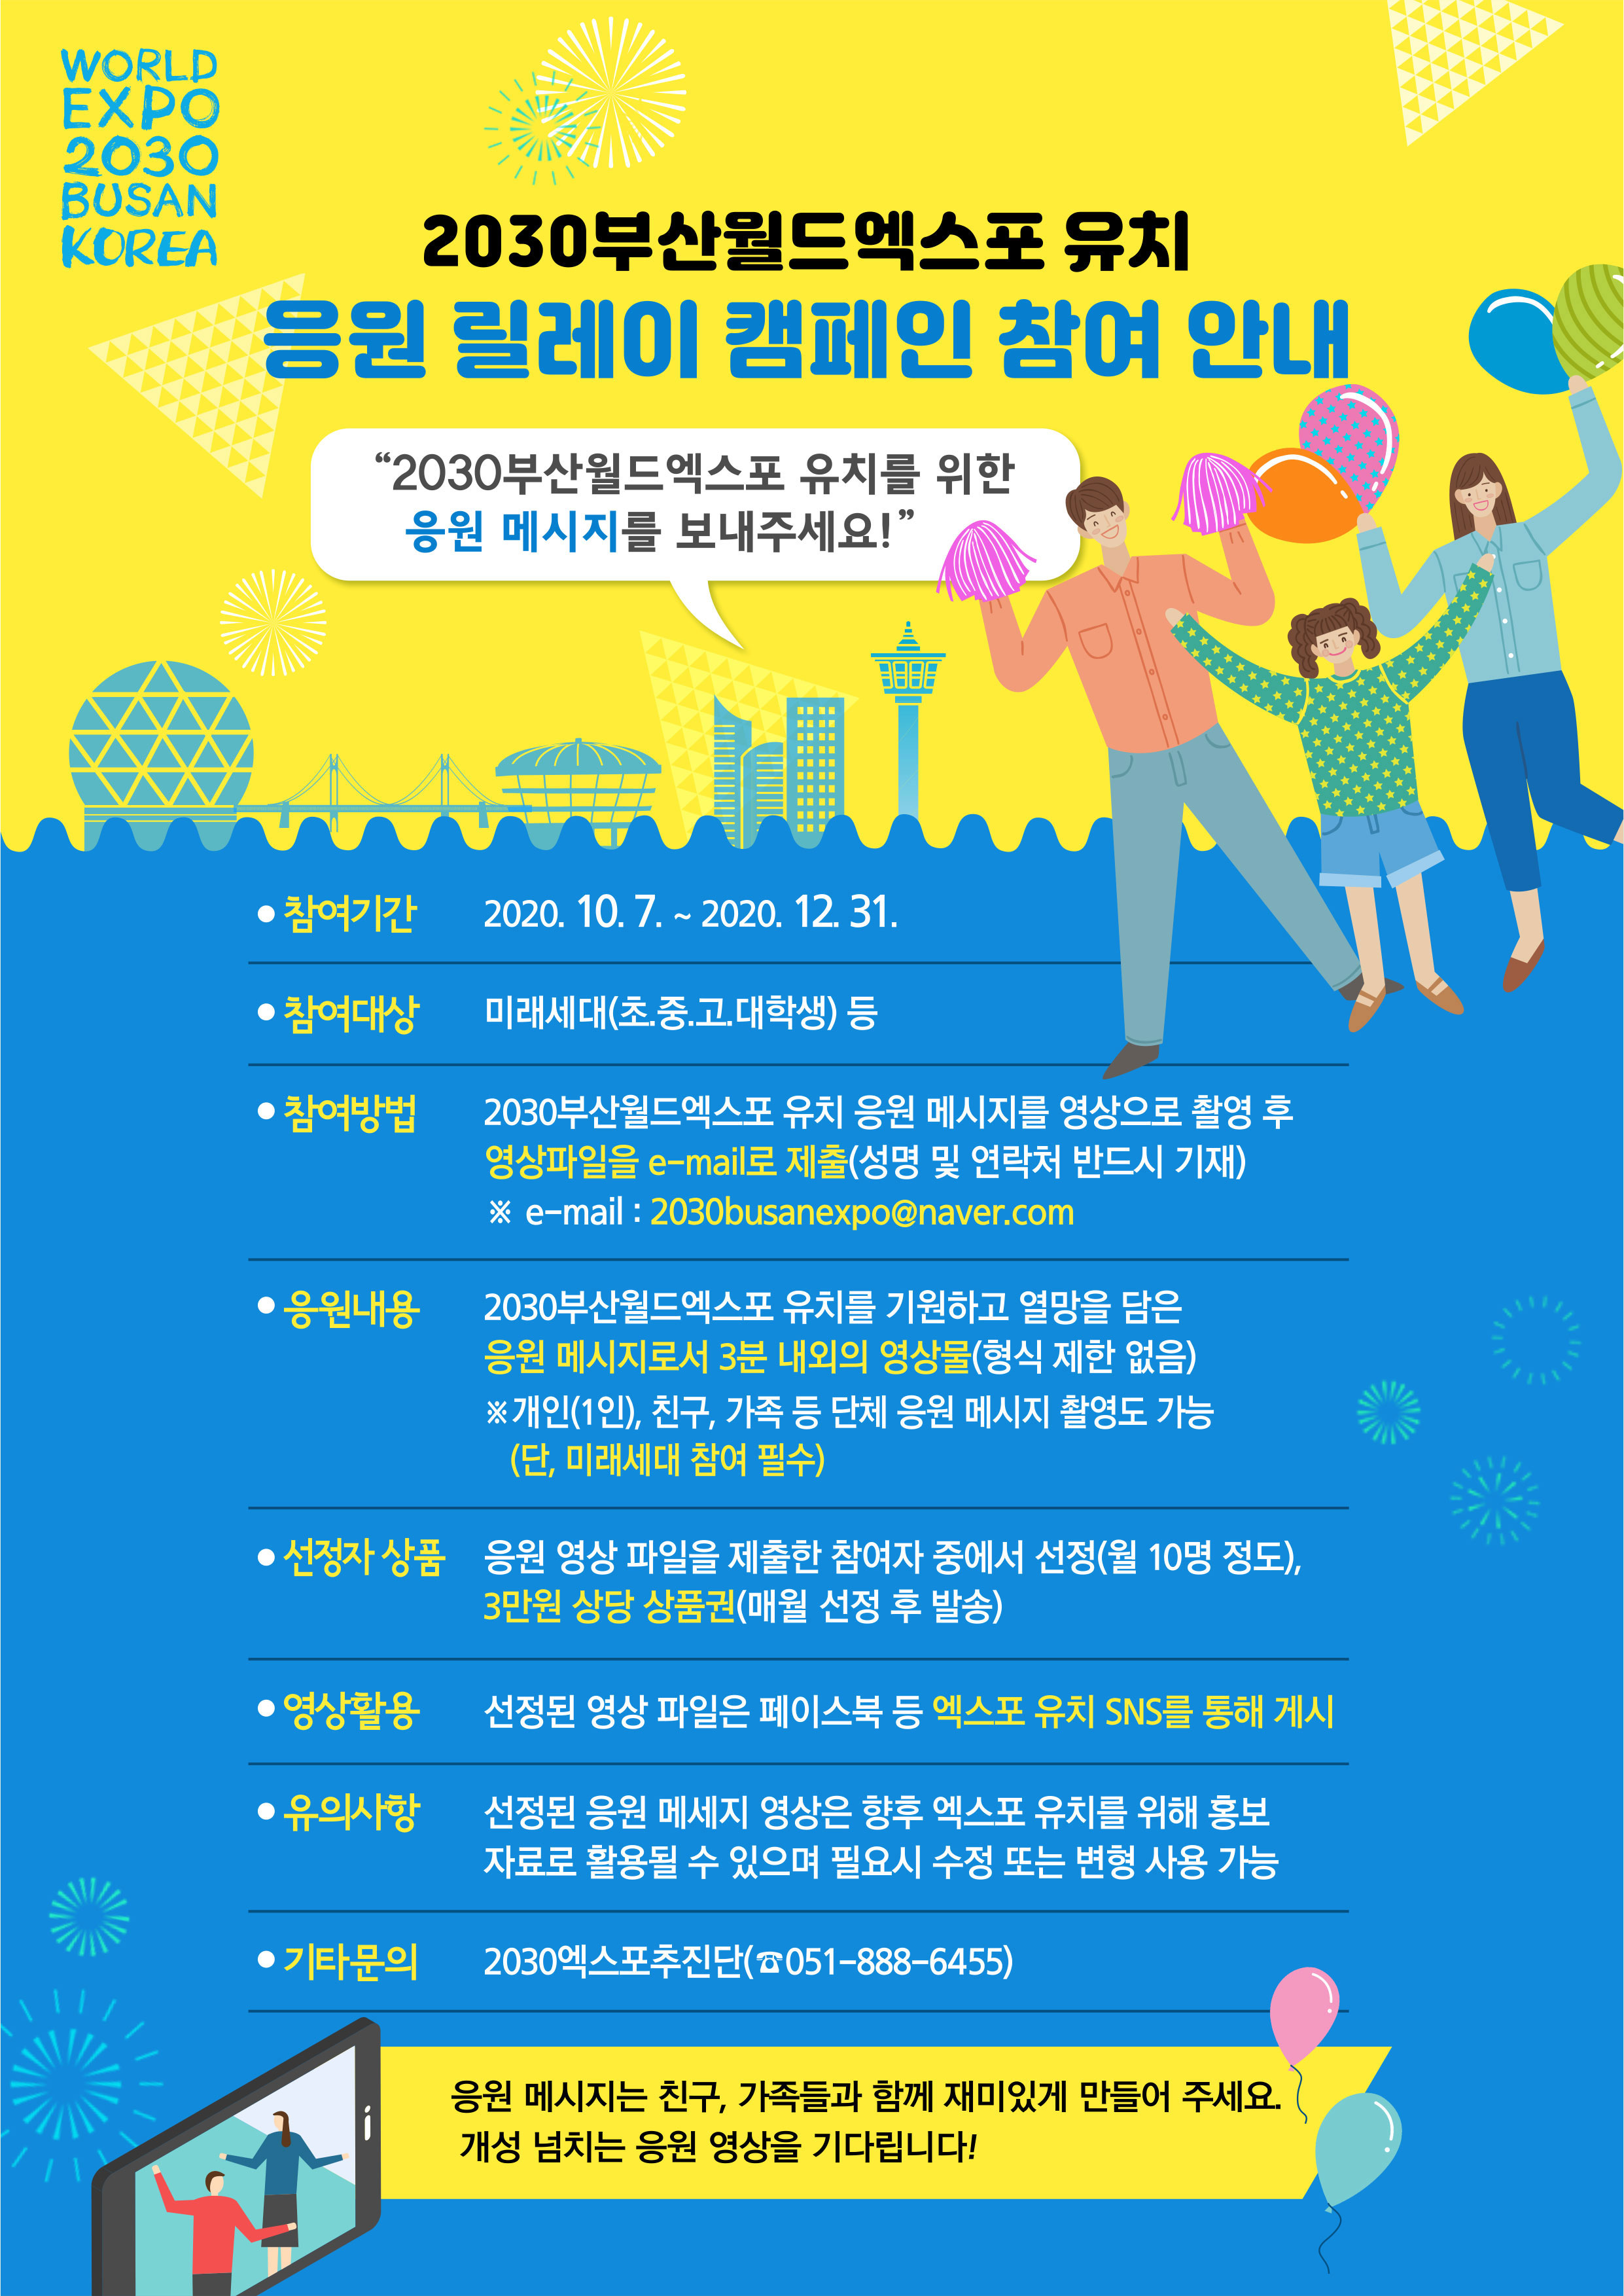 2030부산월드엑스포 유치 응원 릴레이 캠페인 참여안내 1